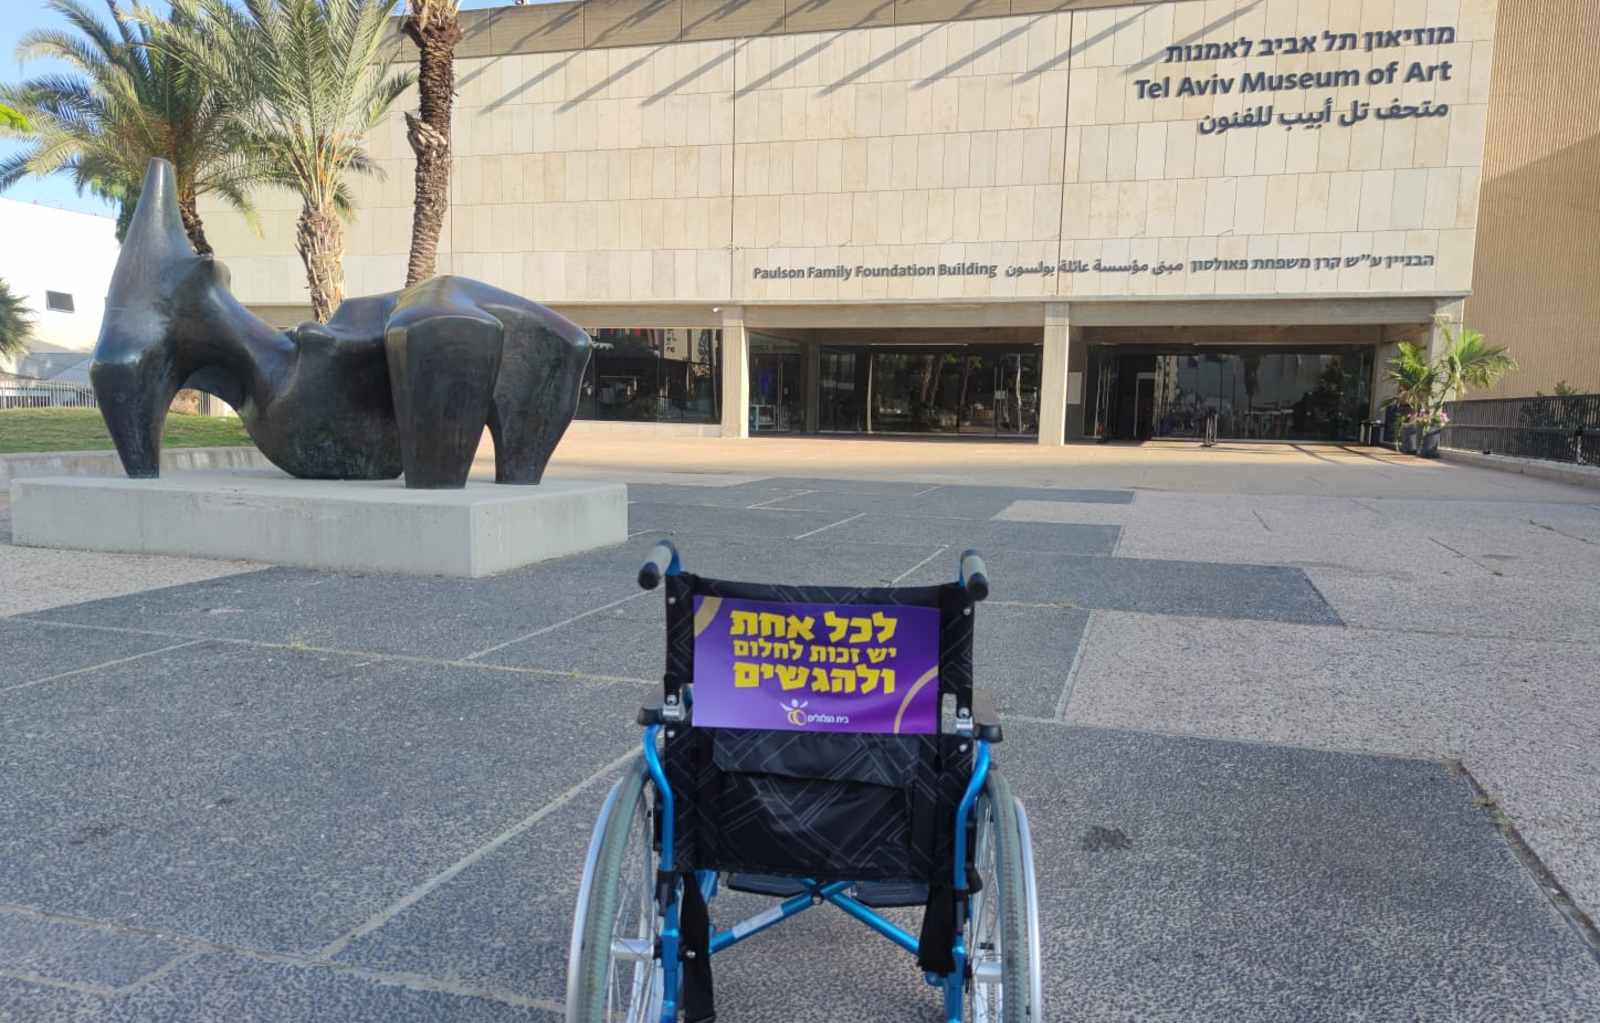 כיסא גלגלים ברחבת מוזיאון תל אביב. צילום: יח"צ